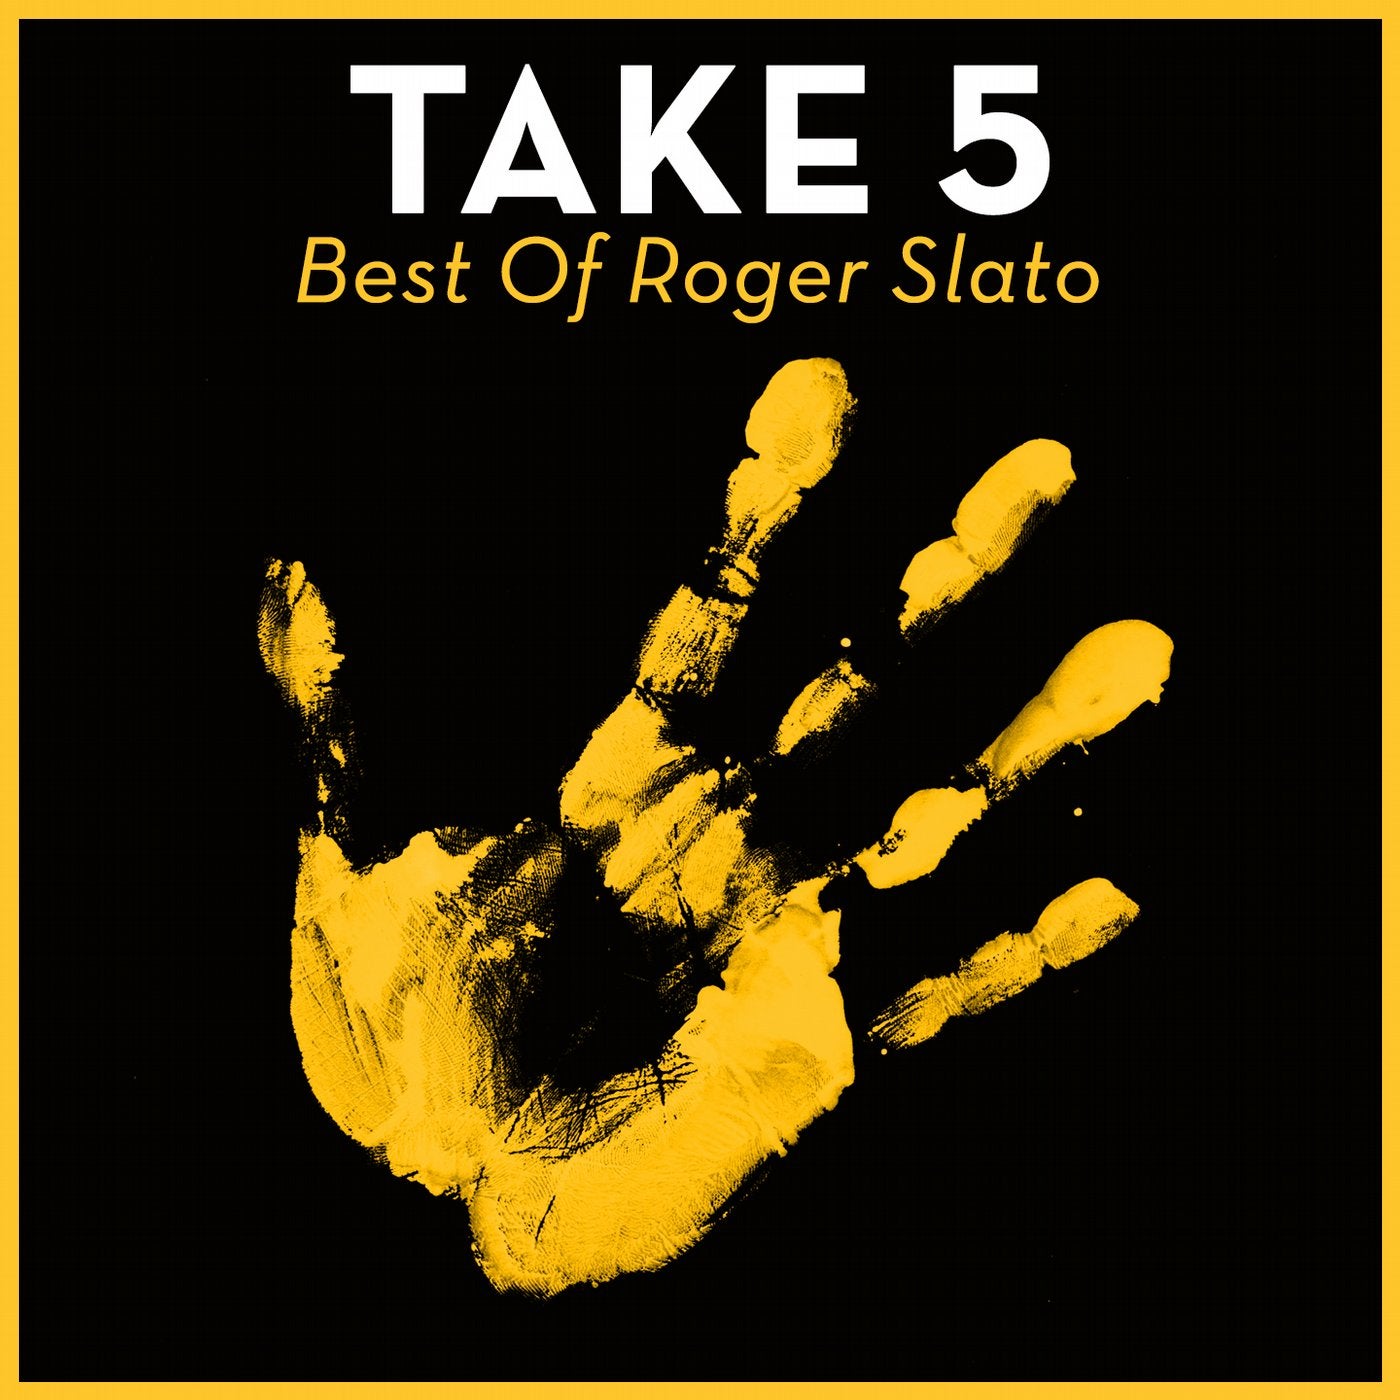 Take 5 - Best Of Roger Slato